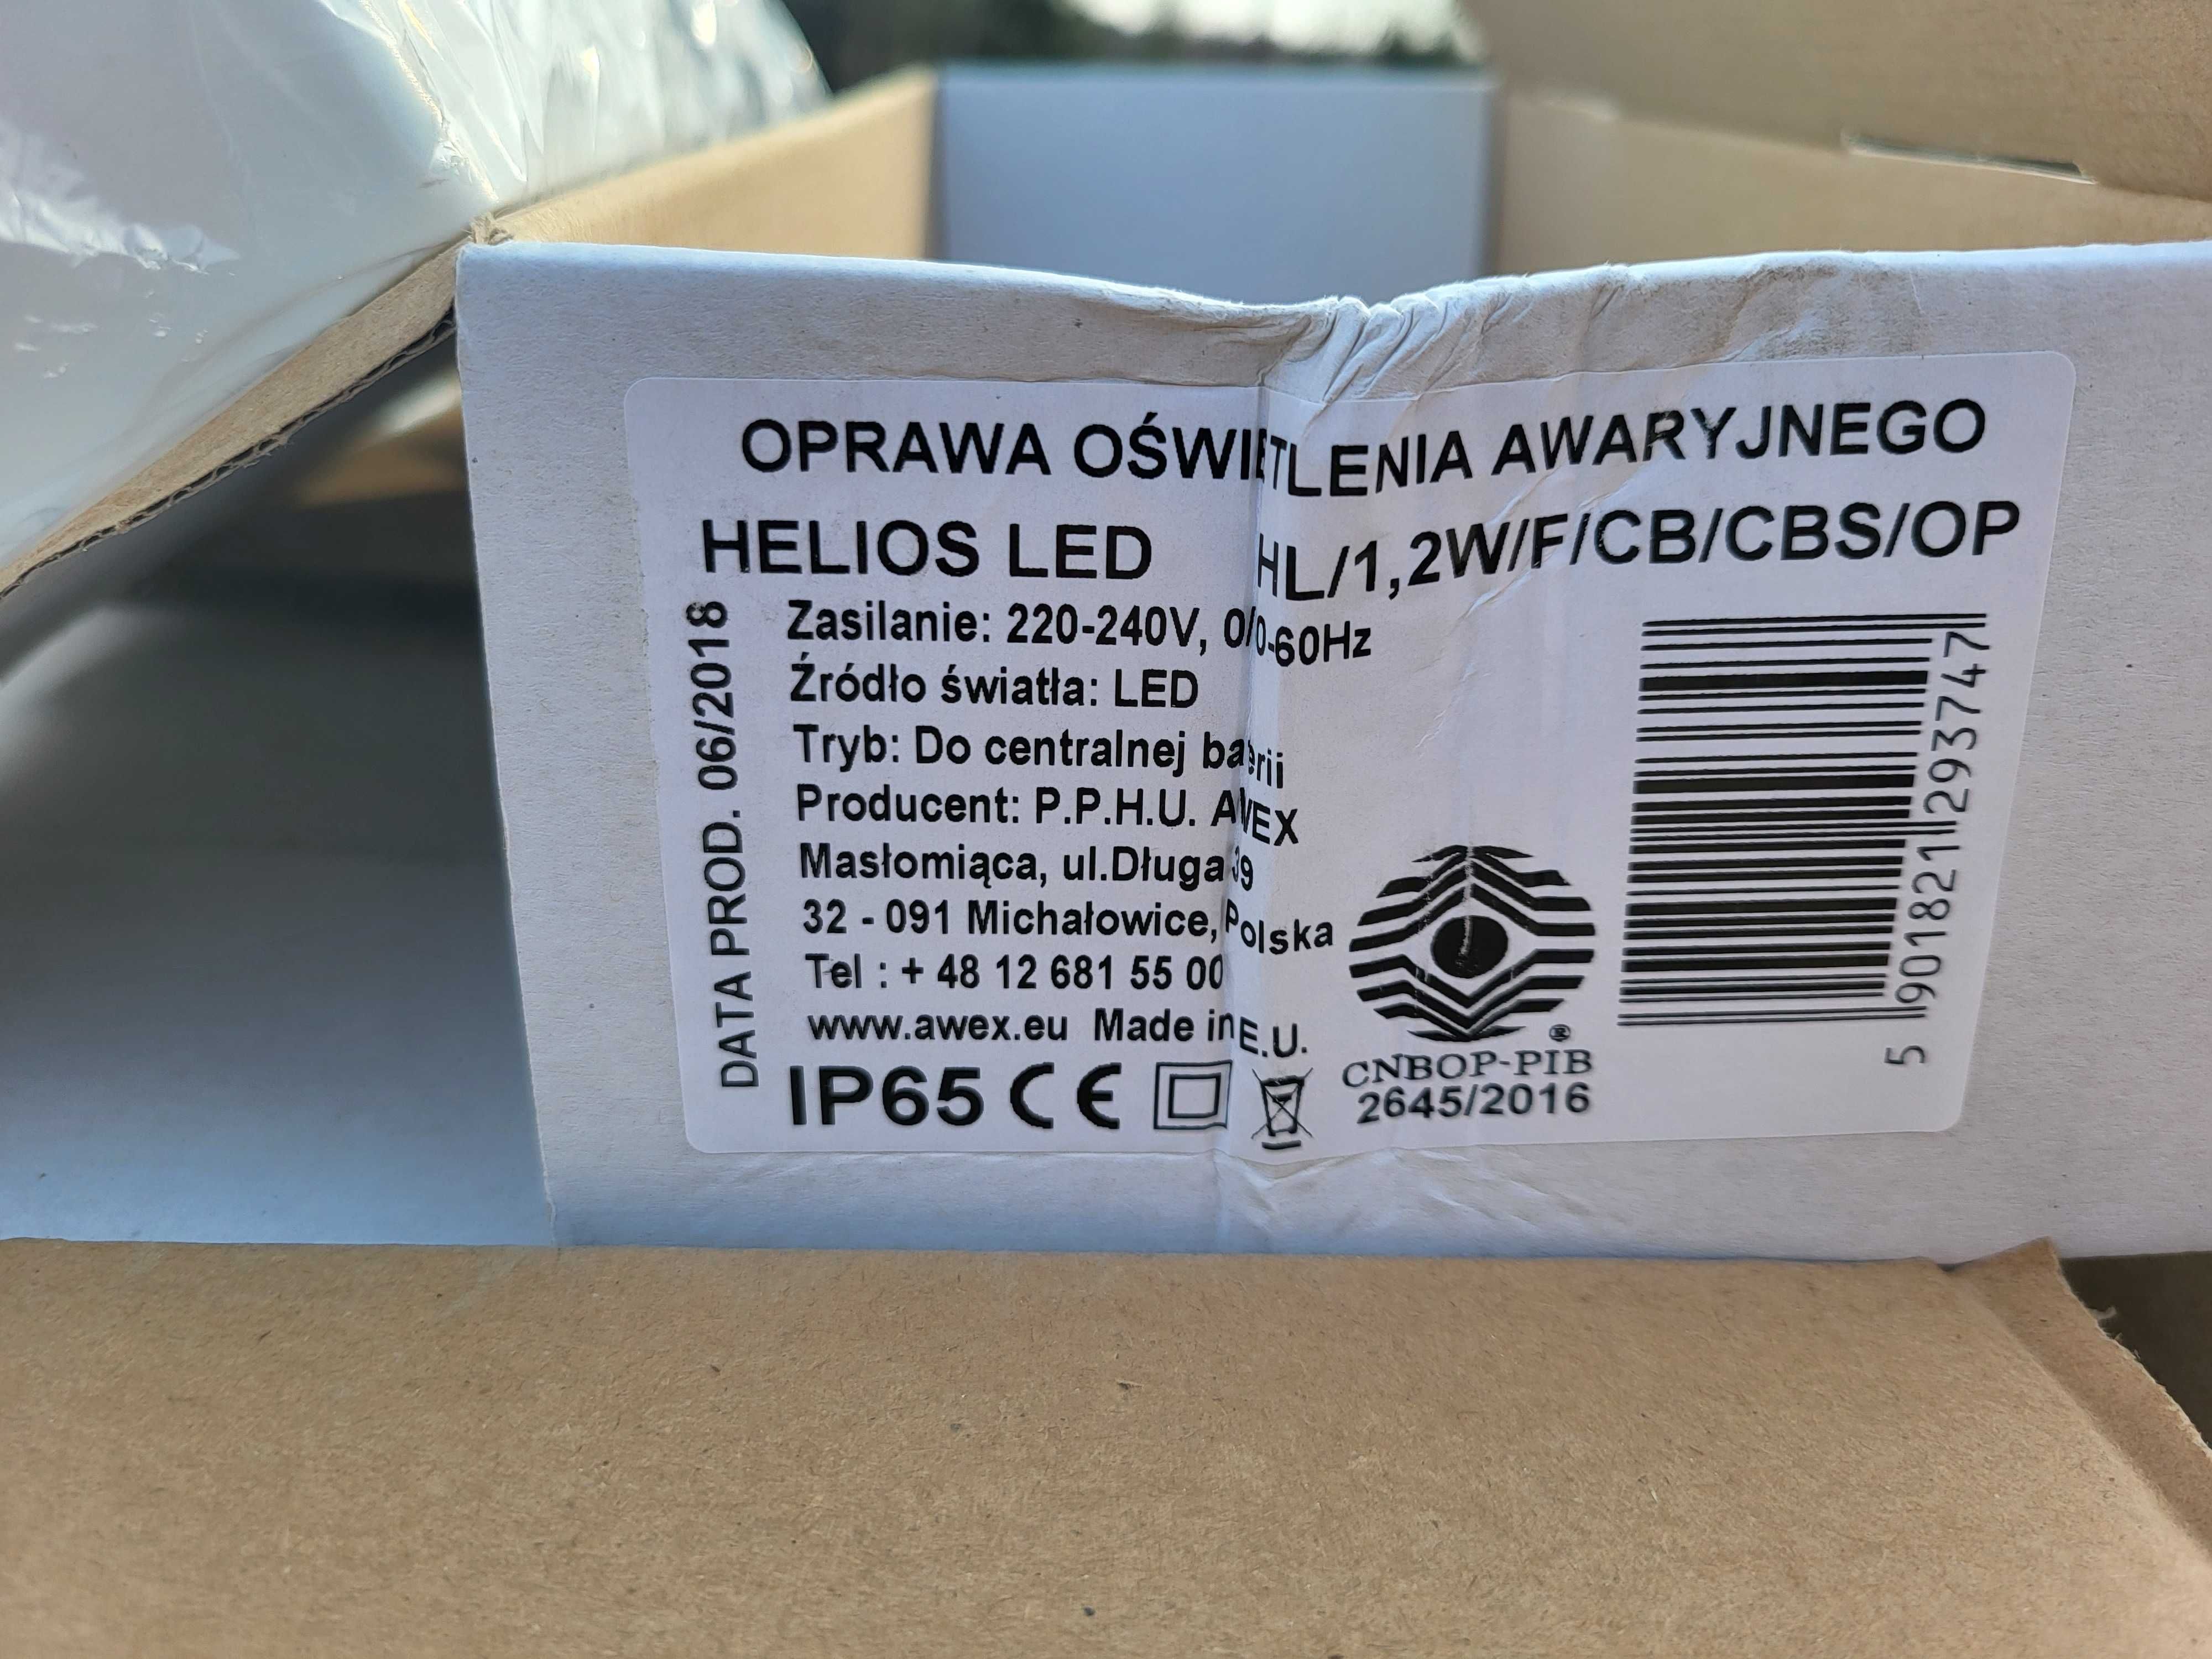 Oprawa oświetlenia awaryjnego Helios LED HL/1,2W Awex